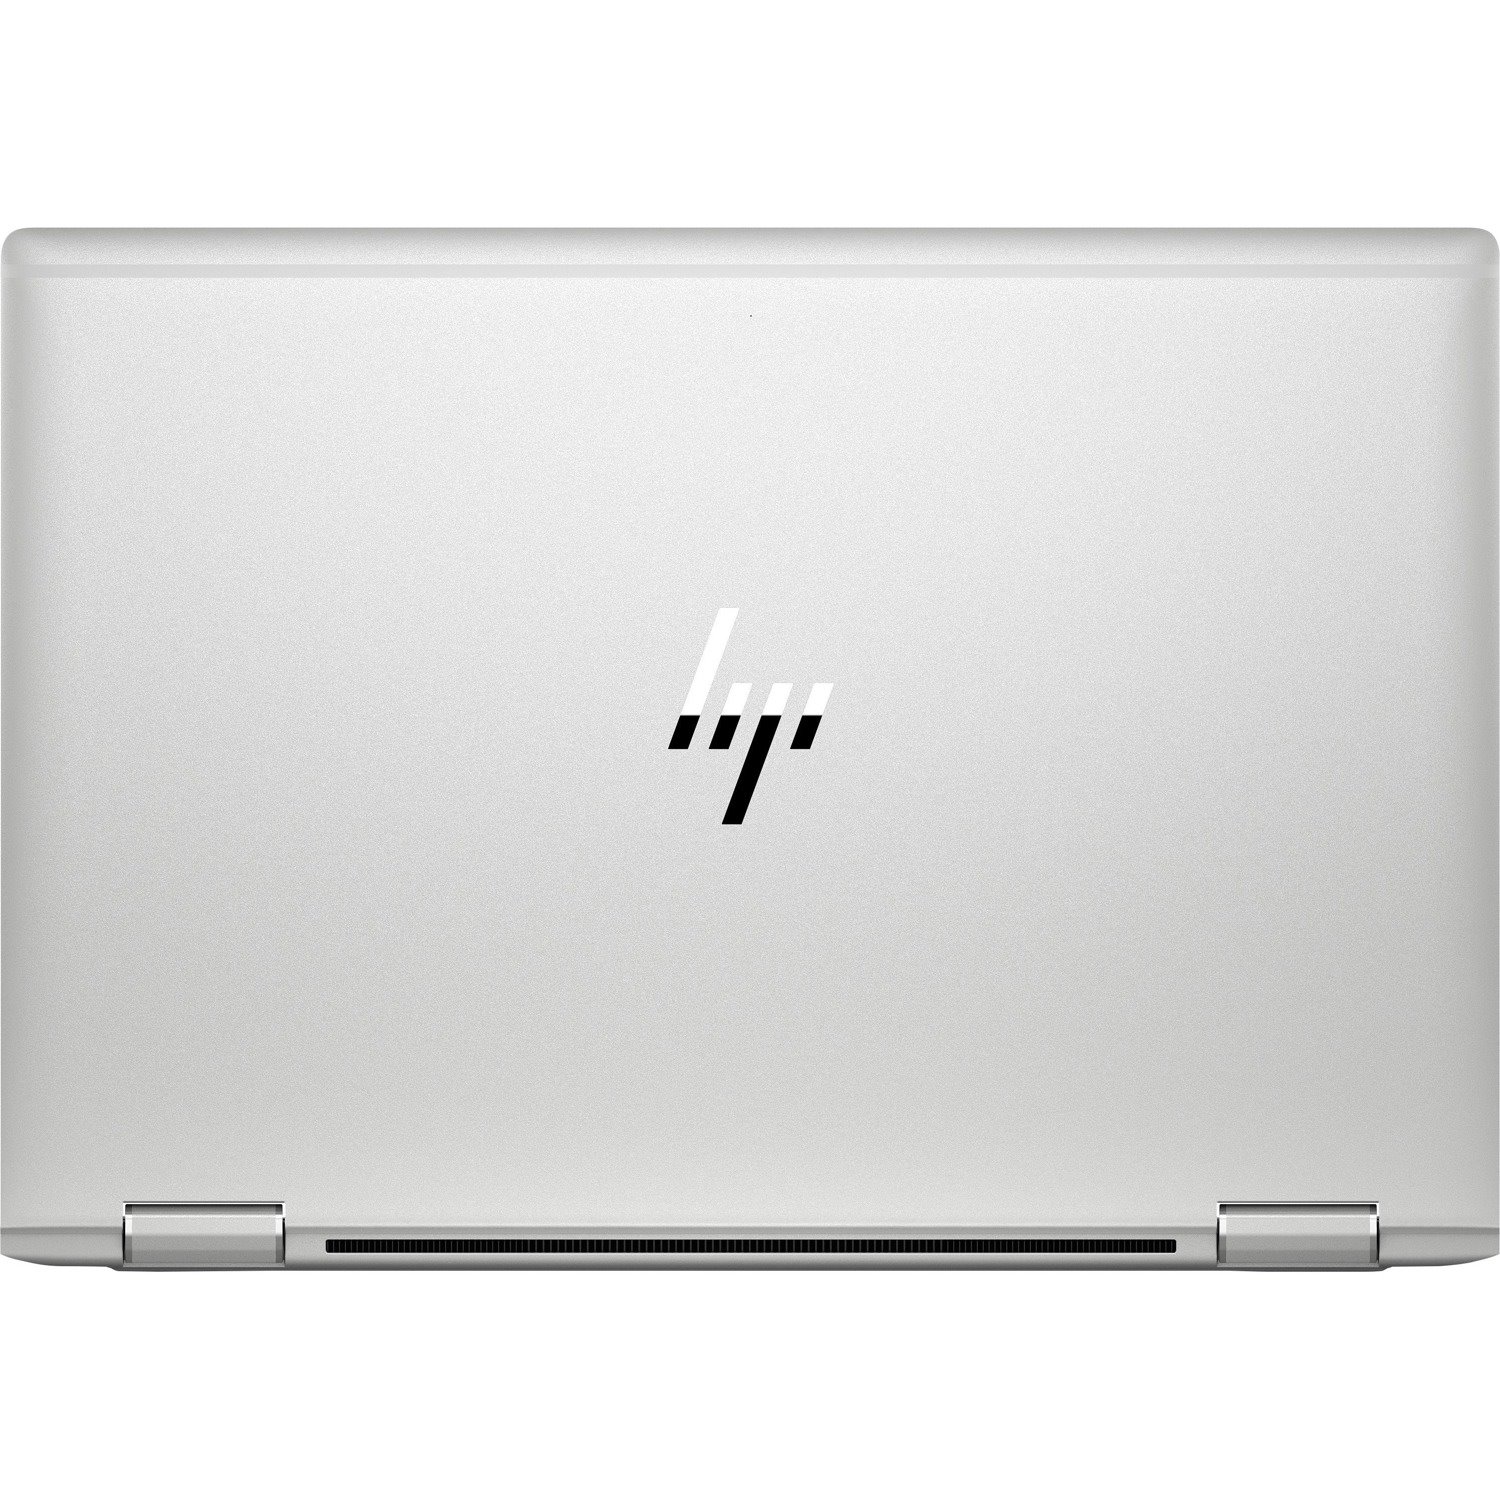 HP EliteBook x360 1030 G4 13.3" Touchscreen Convertible 2 in 1 Notebook - 1920 x 1080 - Intel Core i7 8th Gen i7-8565U Quad-core (4 Core) 1.80 GHz - 8 GB Total RAM - 256 GB SSD